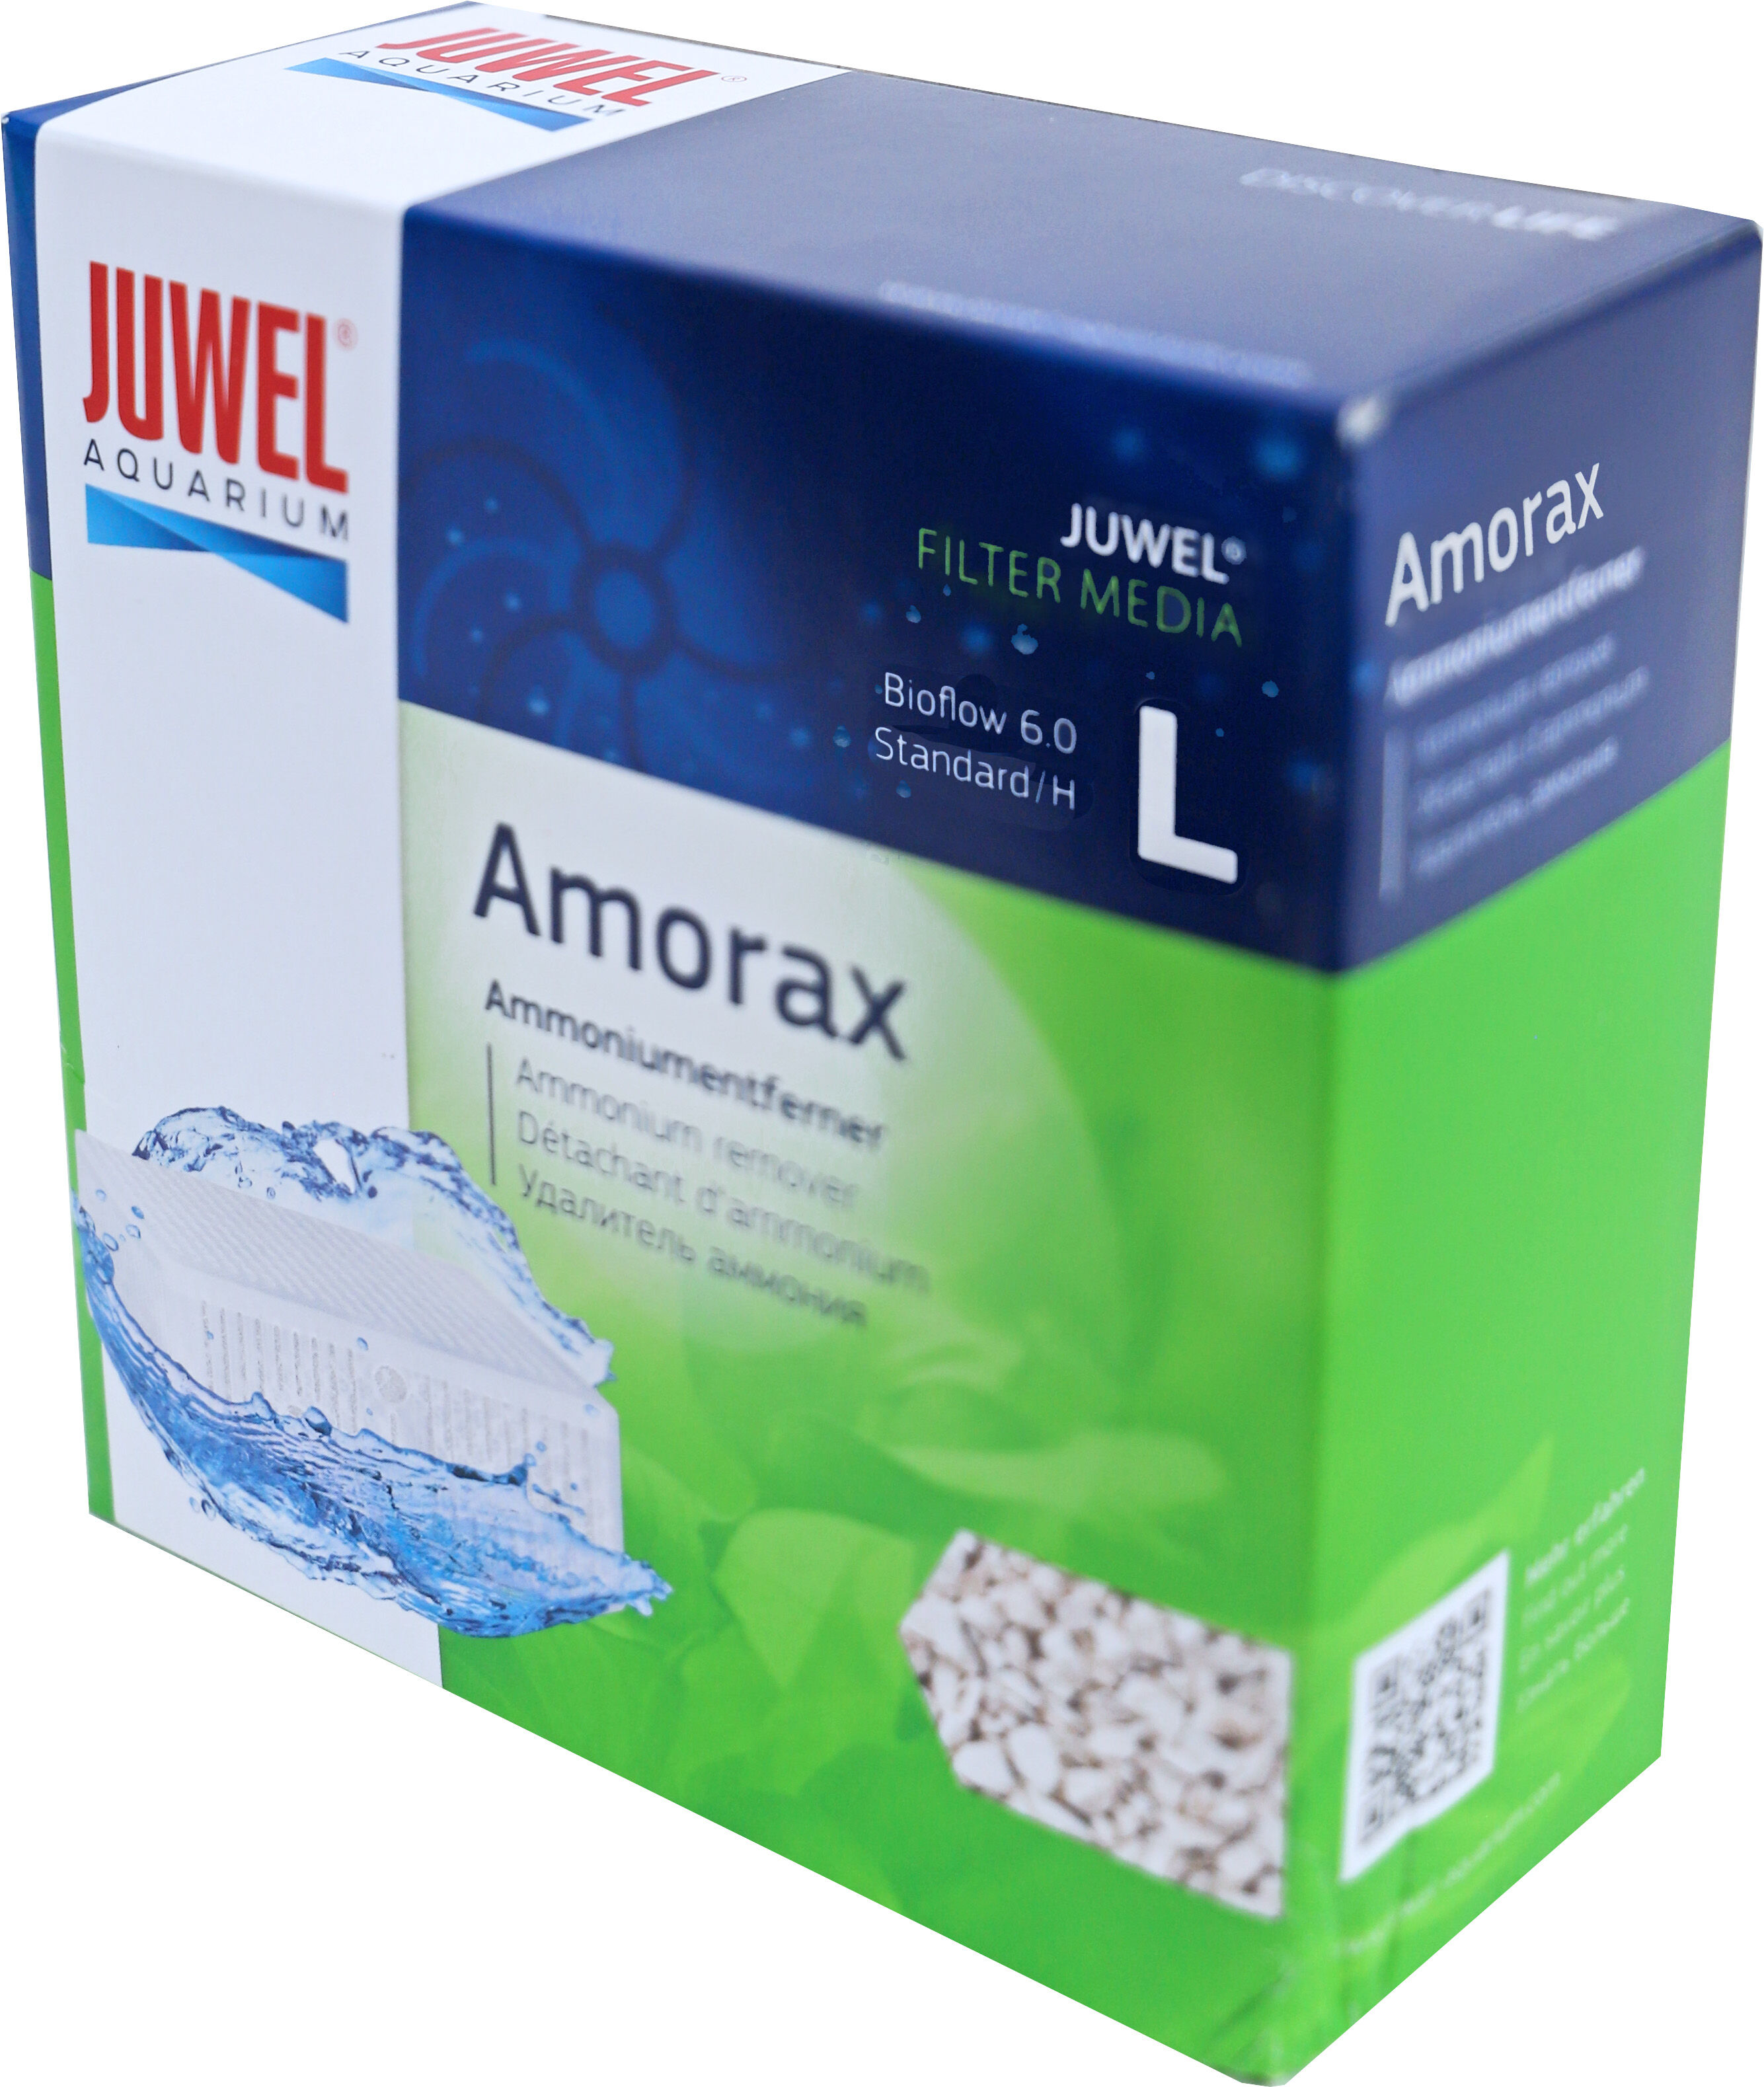 Amorax Bioflow L 6.0/Standaard